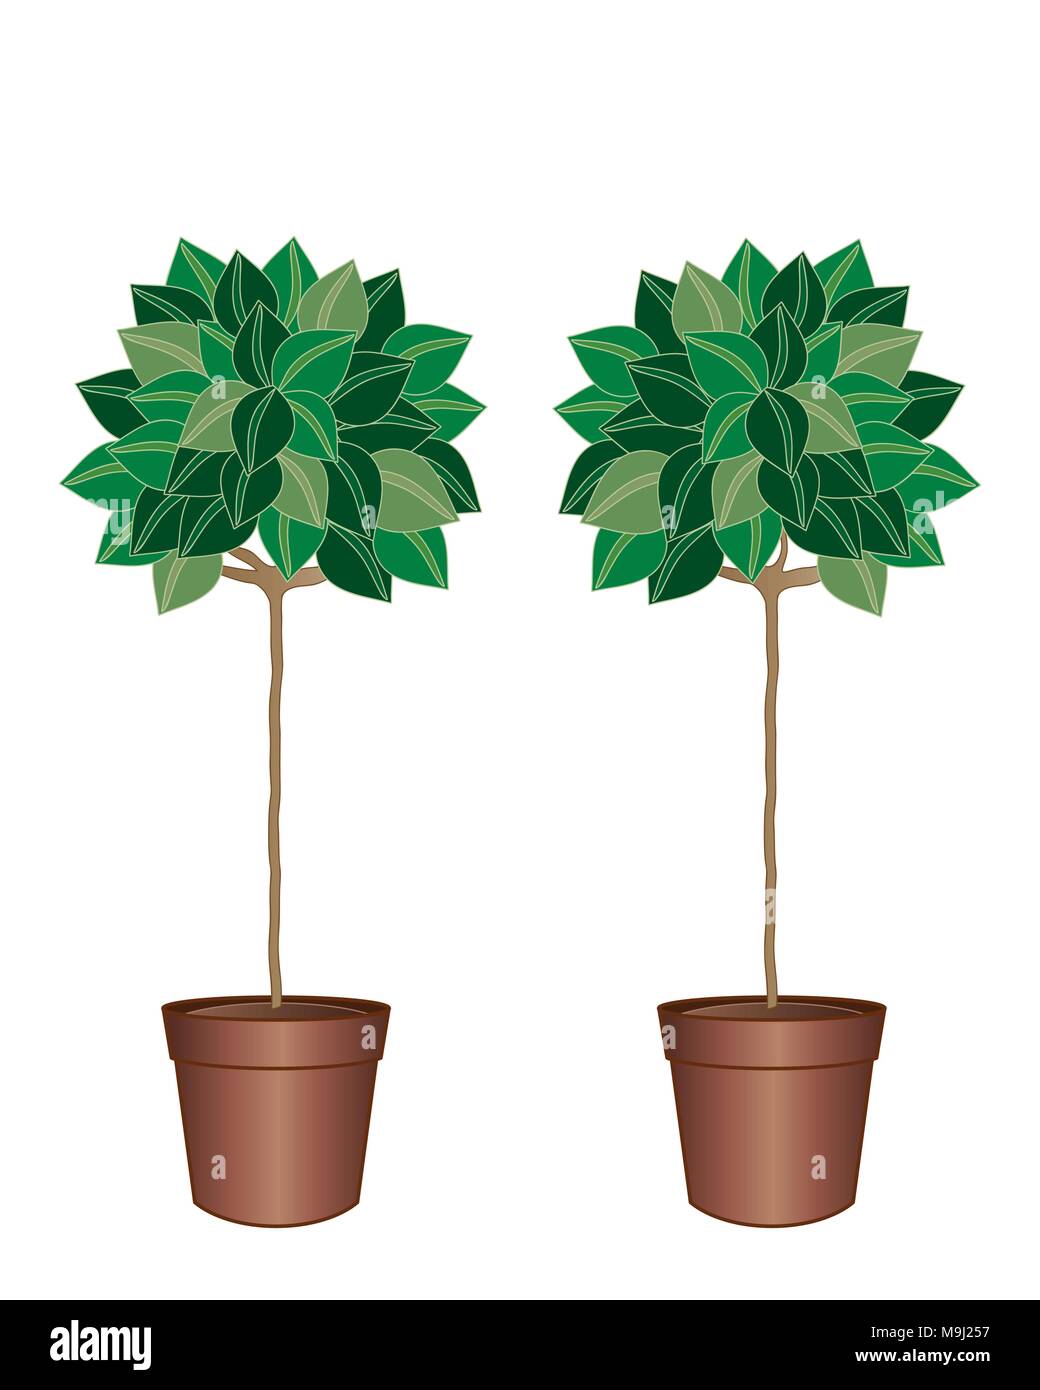 Una illustrazione di una coppia di motivi decorativi baia alberi in marrone pots con fogliame verde isolato su uno sfondo bianco Illustrazione Vettoriale